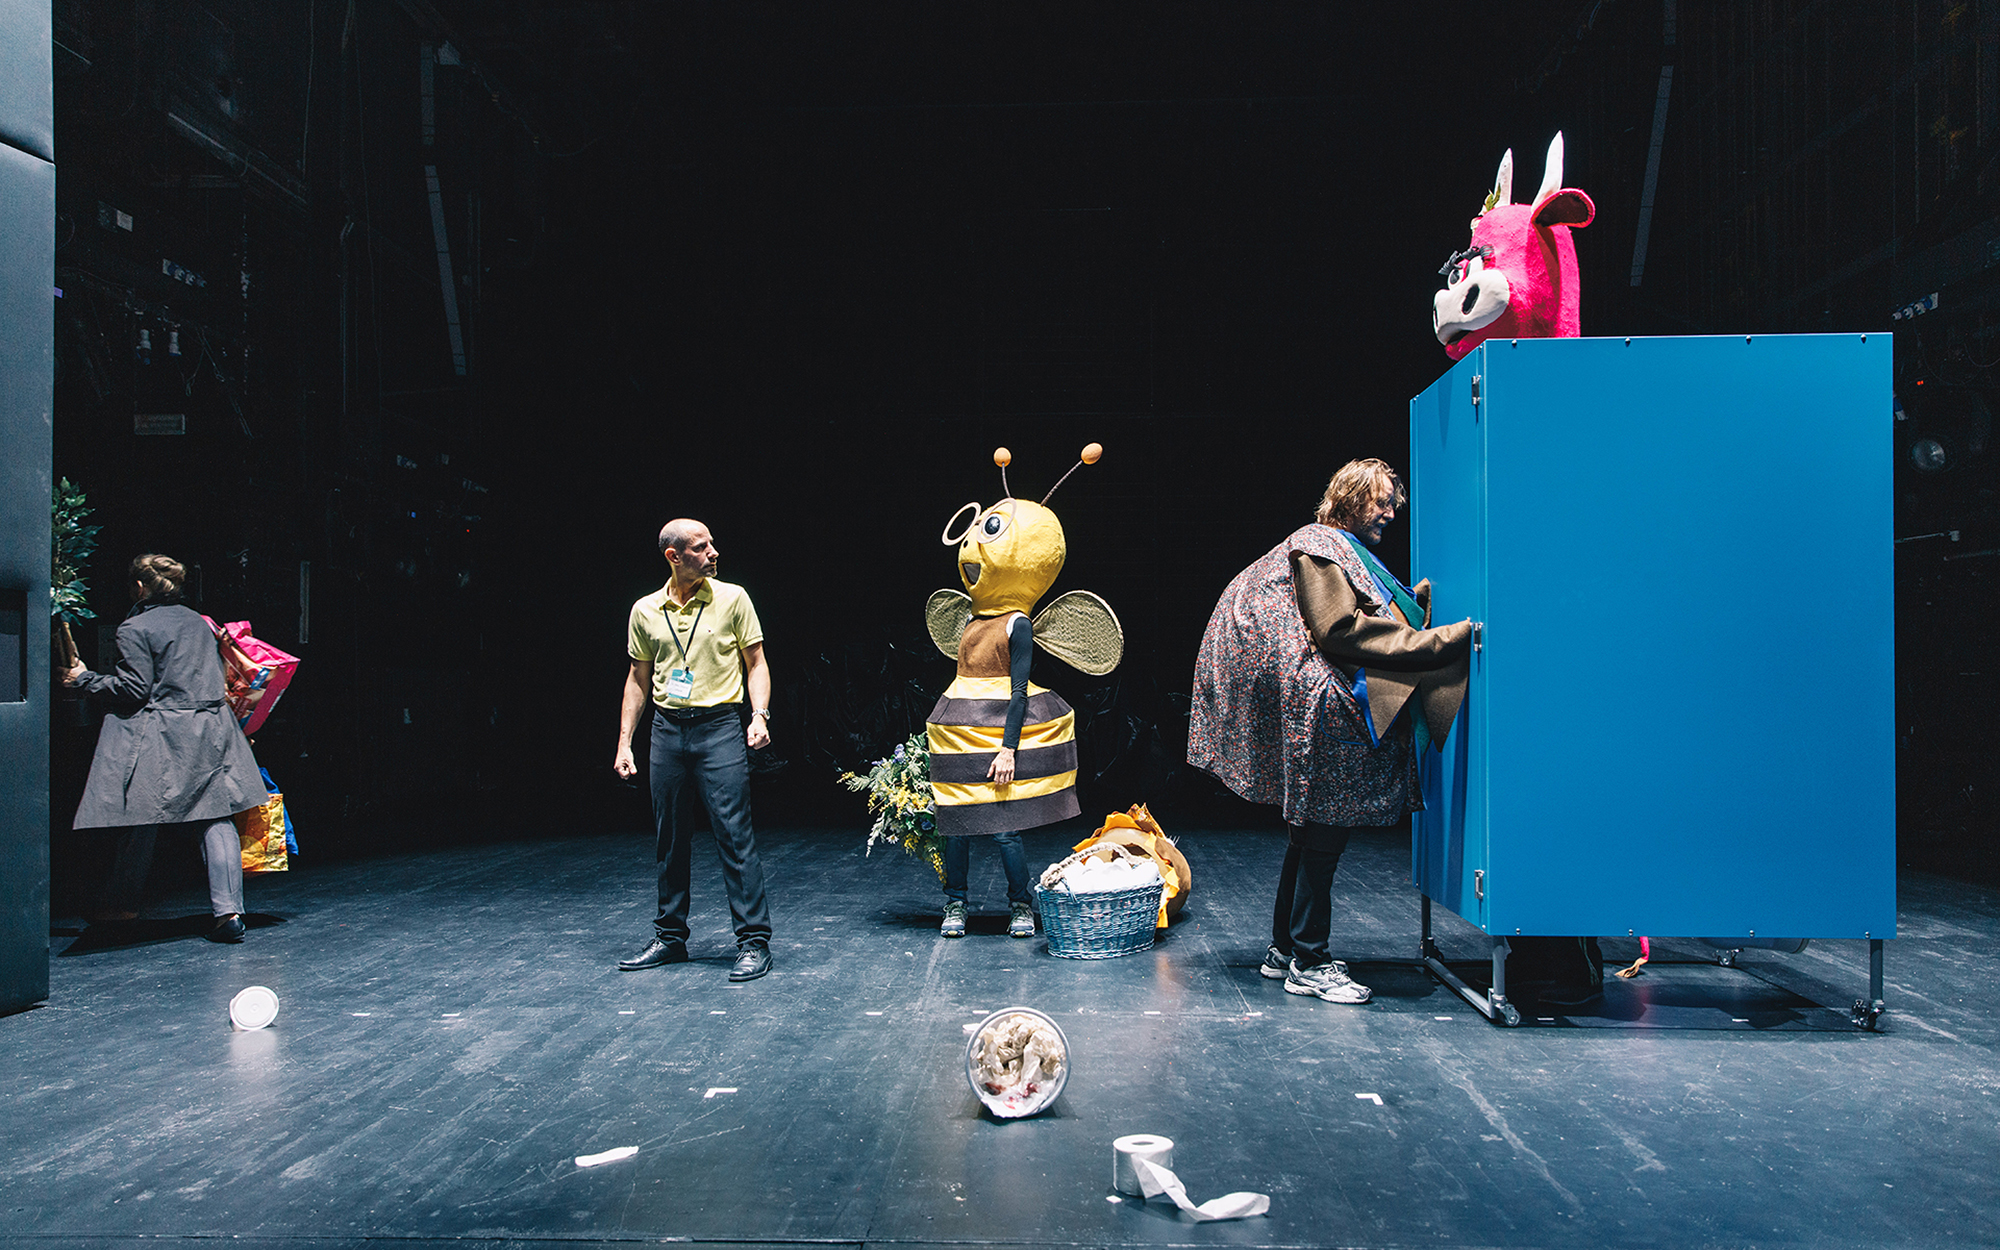 Igralec, kostumiran v velikega ptiča (Matej Puc), je snel zgornji del kostuma in se pogovarja z igralcem, kostumiranim v veliko roza kravo (Lotos Vincenc Šparovec), ki sedi na stranišču, v ozadju se igralka, kostumirana v veliko čebelo (Mojca Funkl), pogo